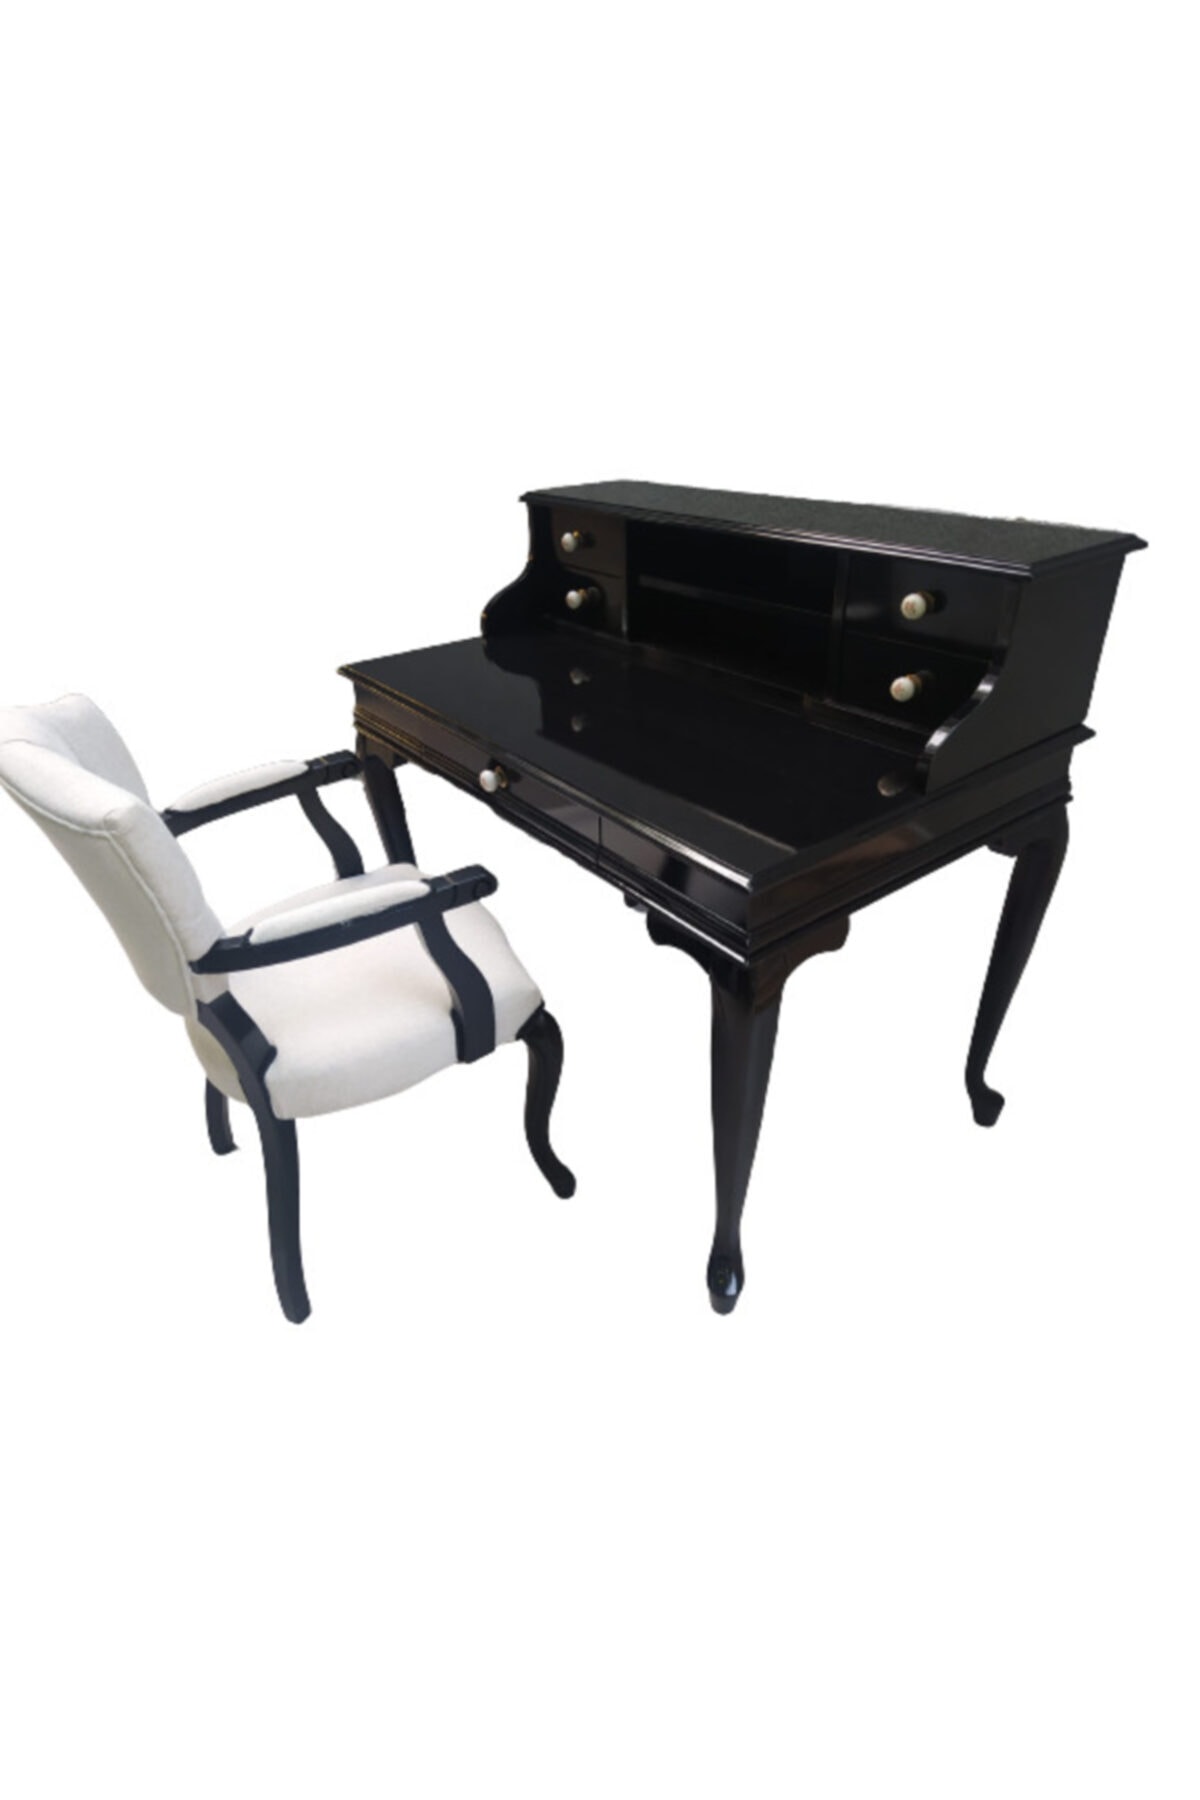 BENGİ TİCARET Çalışma Masa-berjer Sandalye Kelebek Model Siyah Lake Boya Keten Kumaş Aslan Ayak, Porselen Kulp OH10075